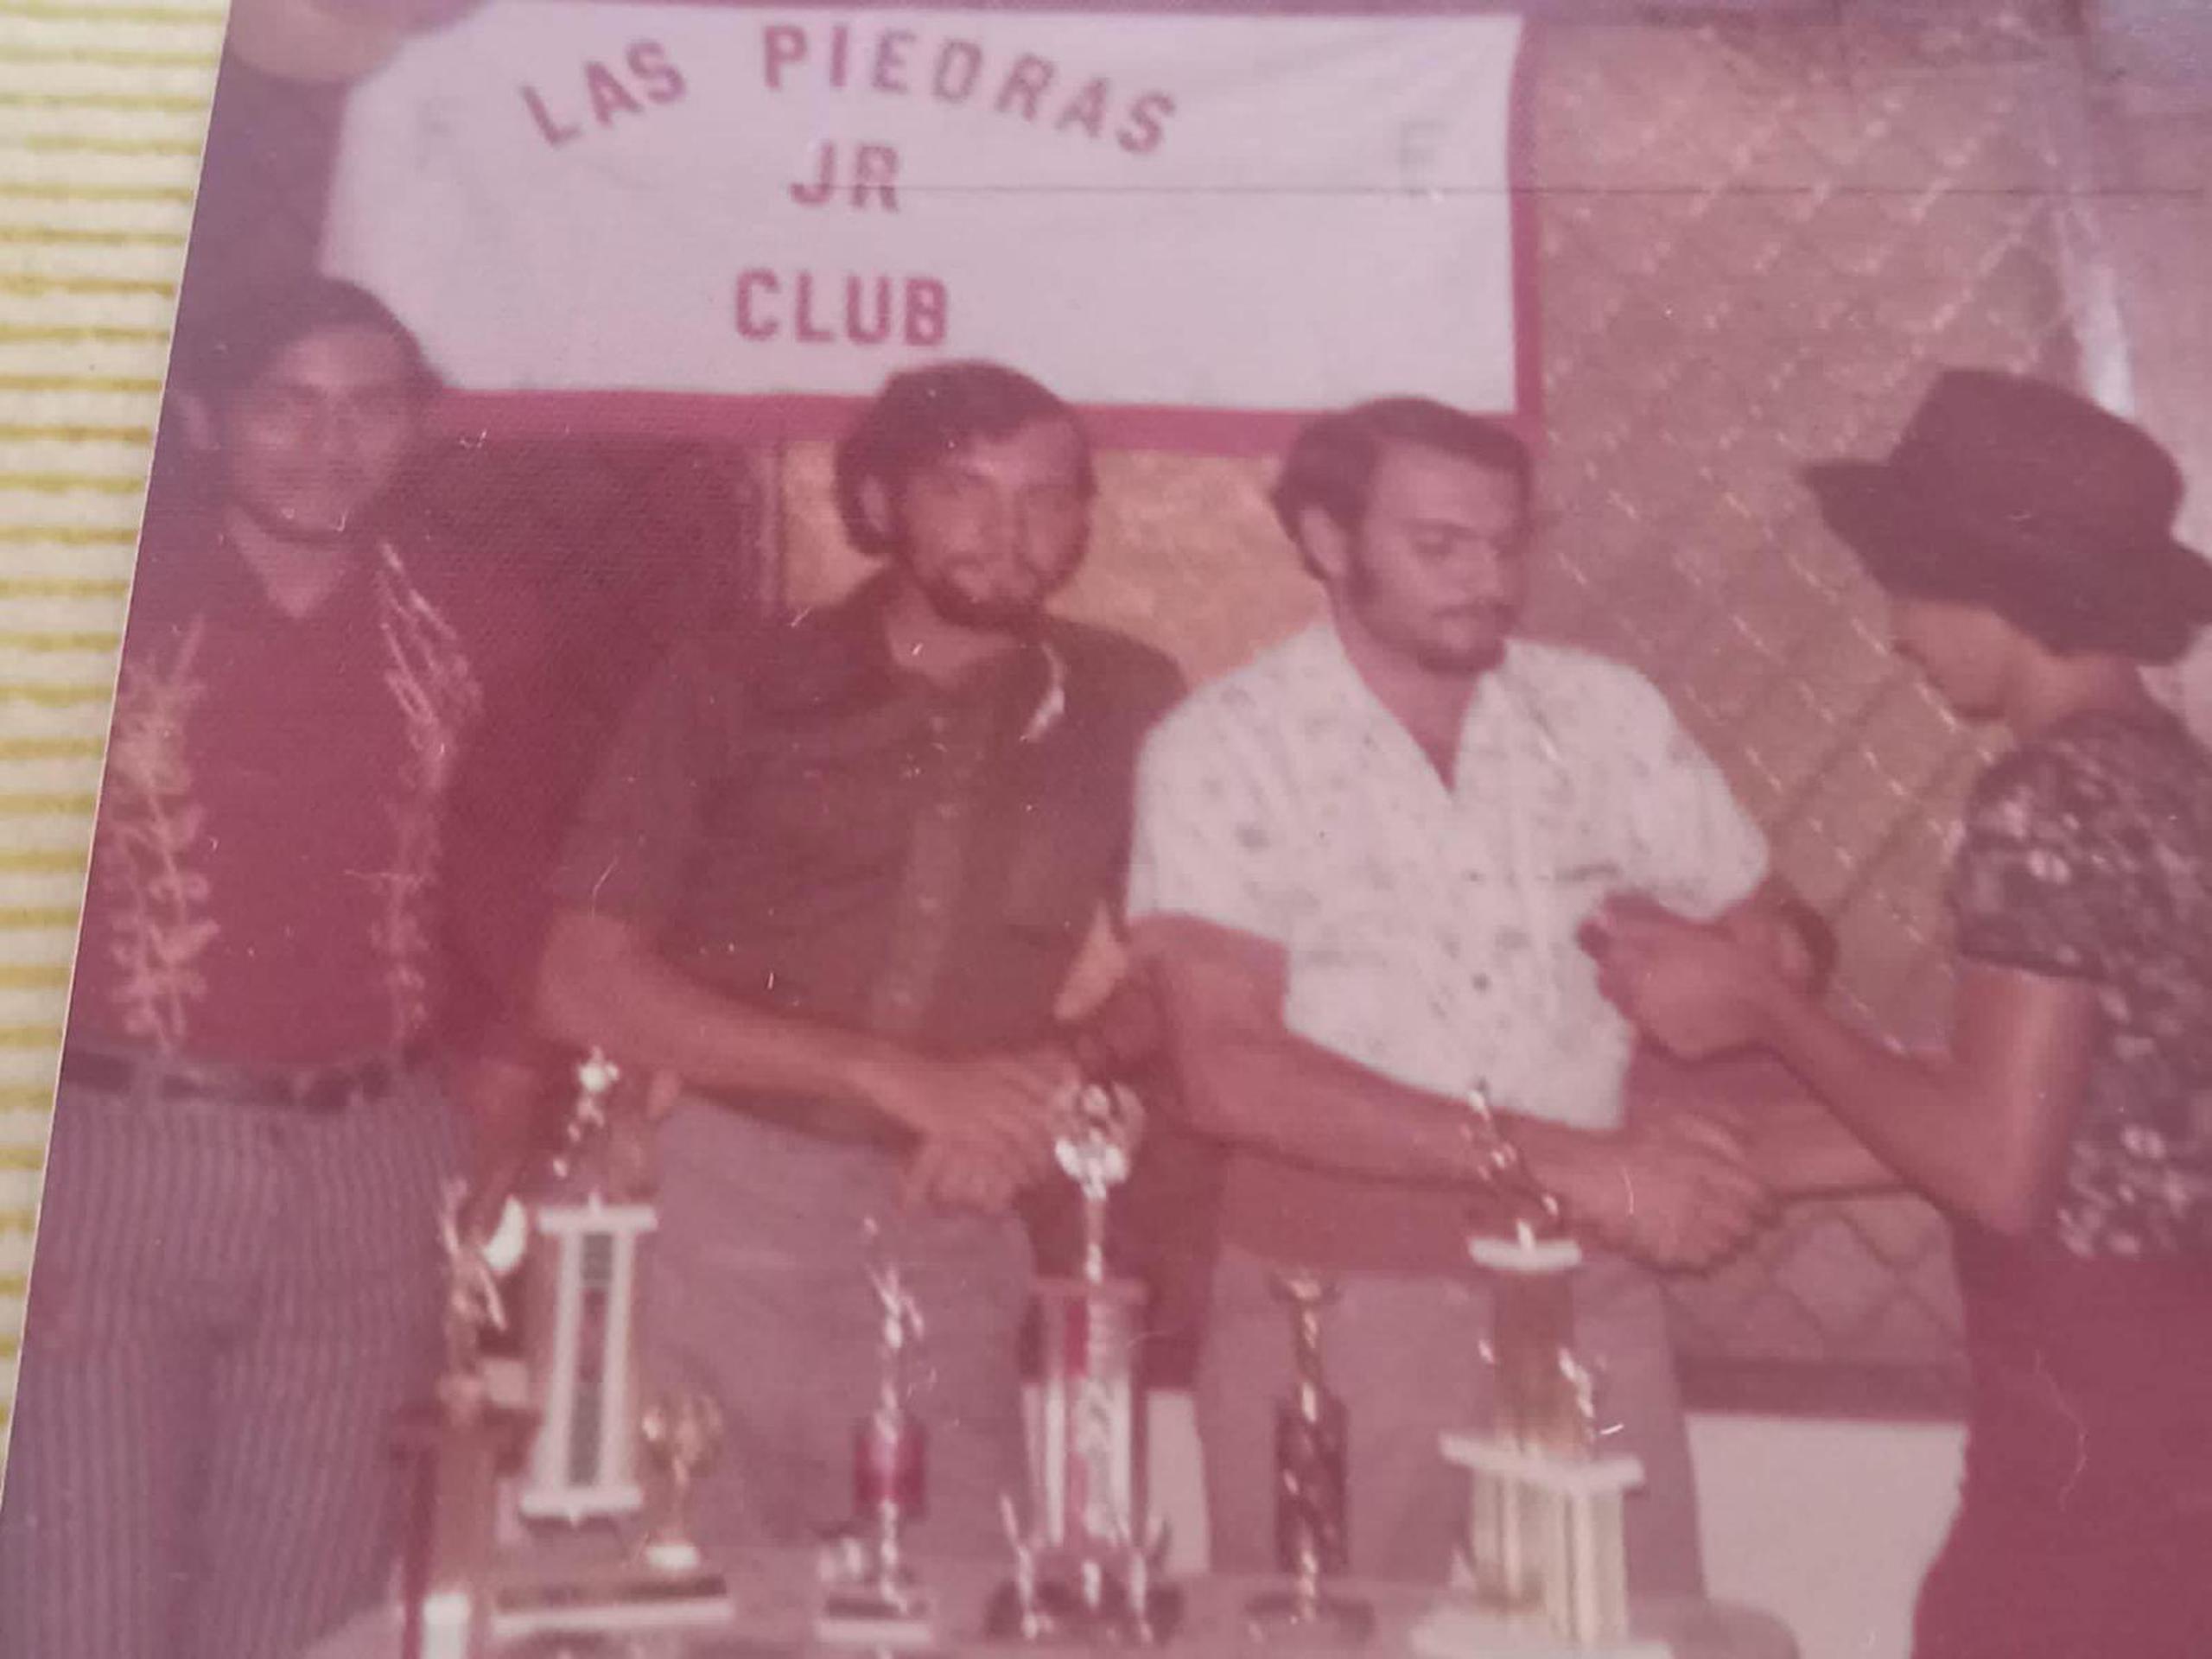 Los hermanos Alfonso, Félix y Florencio González allá para sus inicios en el Las Piedras Junior Club de Cupey.